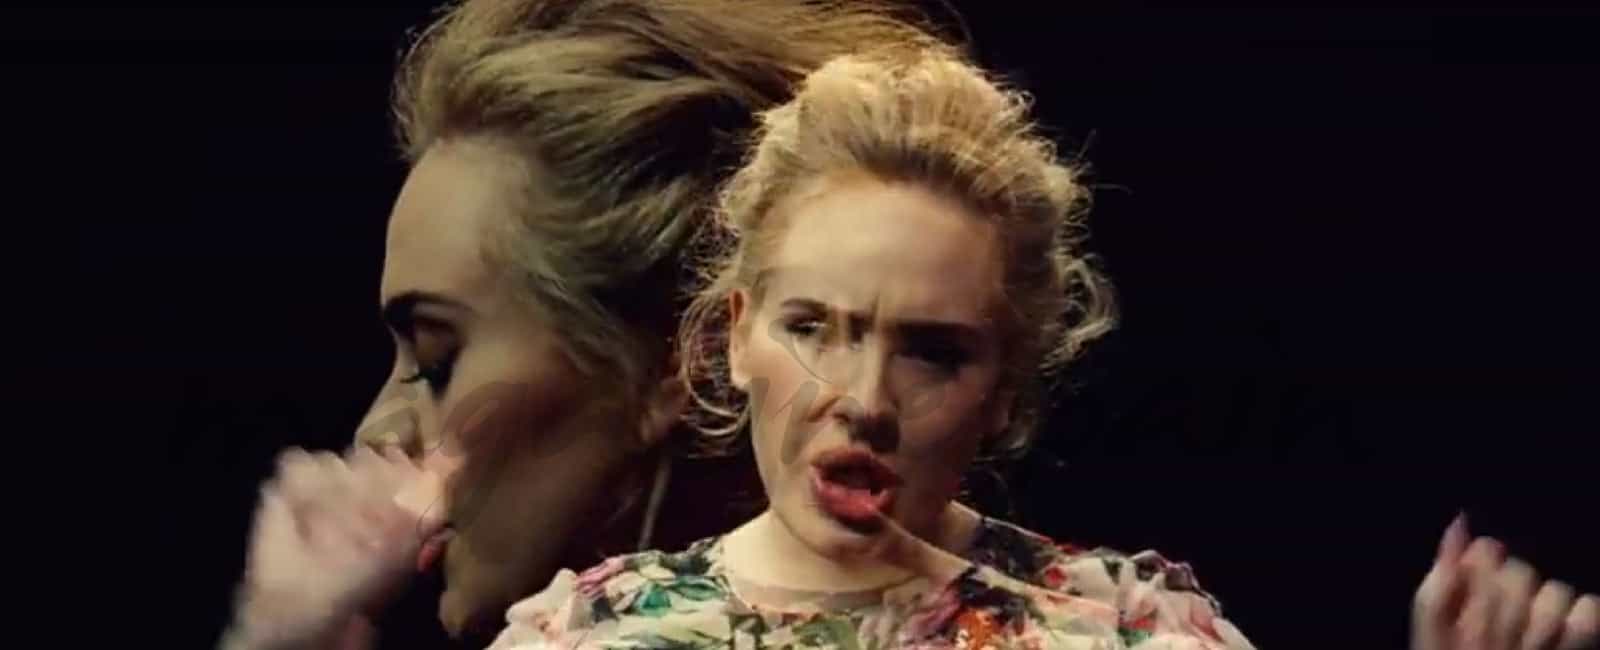 Adele presenta en los premios Billboard, su nuevo videoclip: Send My Love